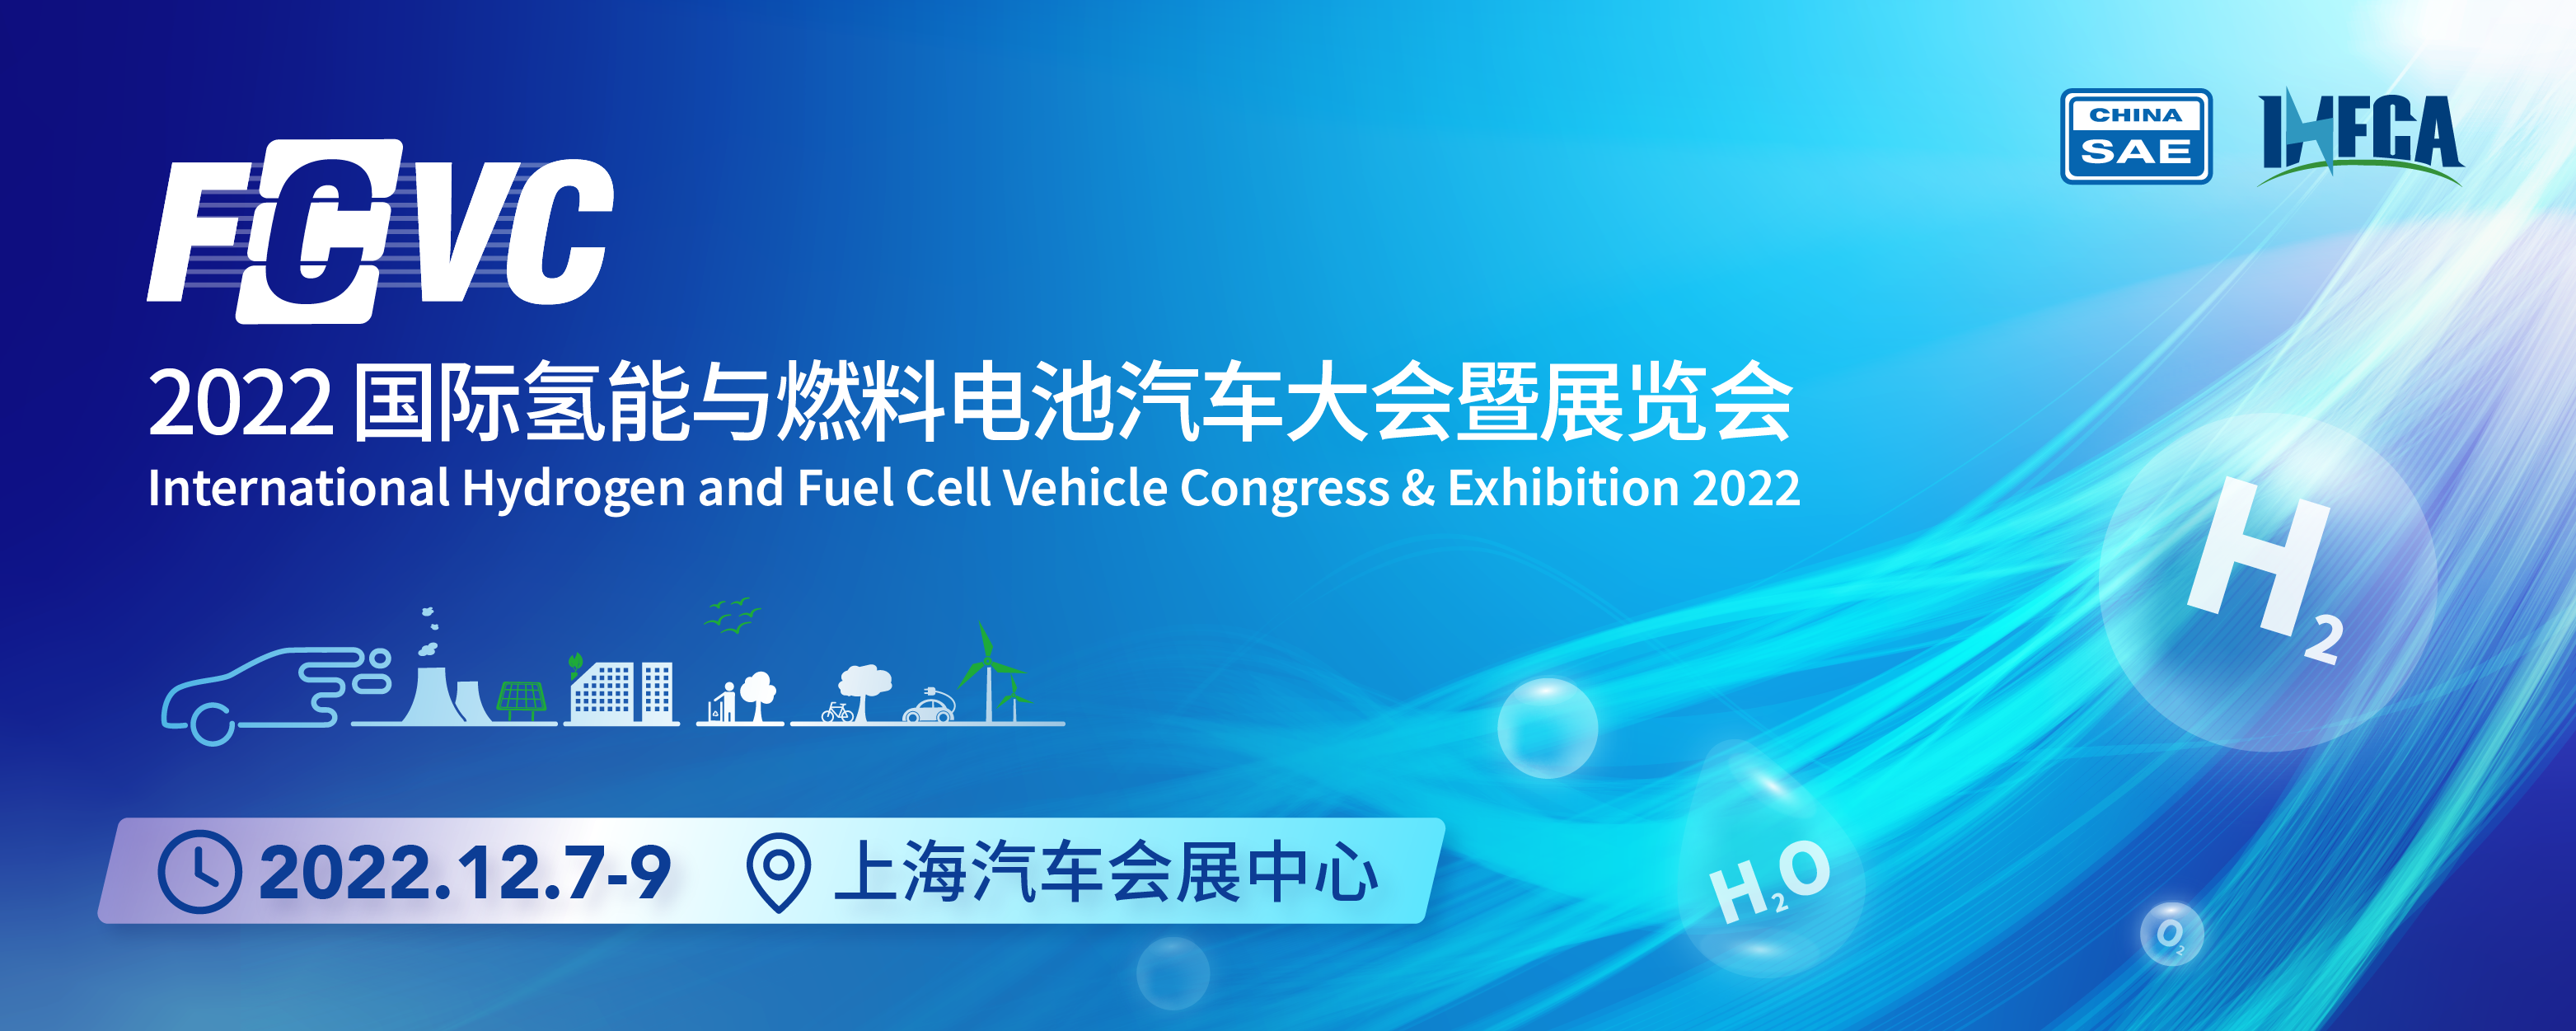 国际氢能燃料电池协会